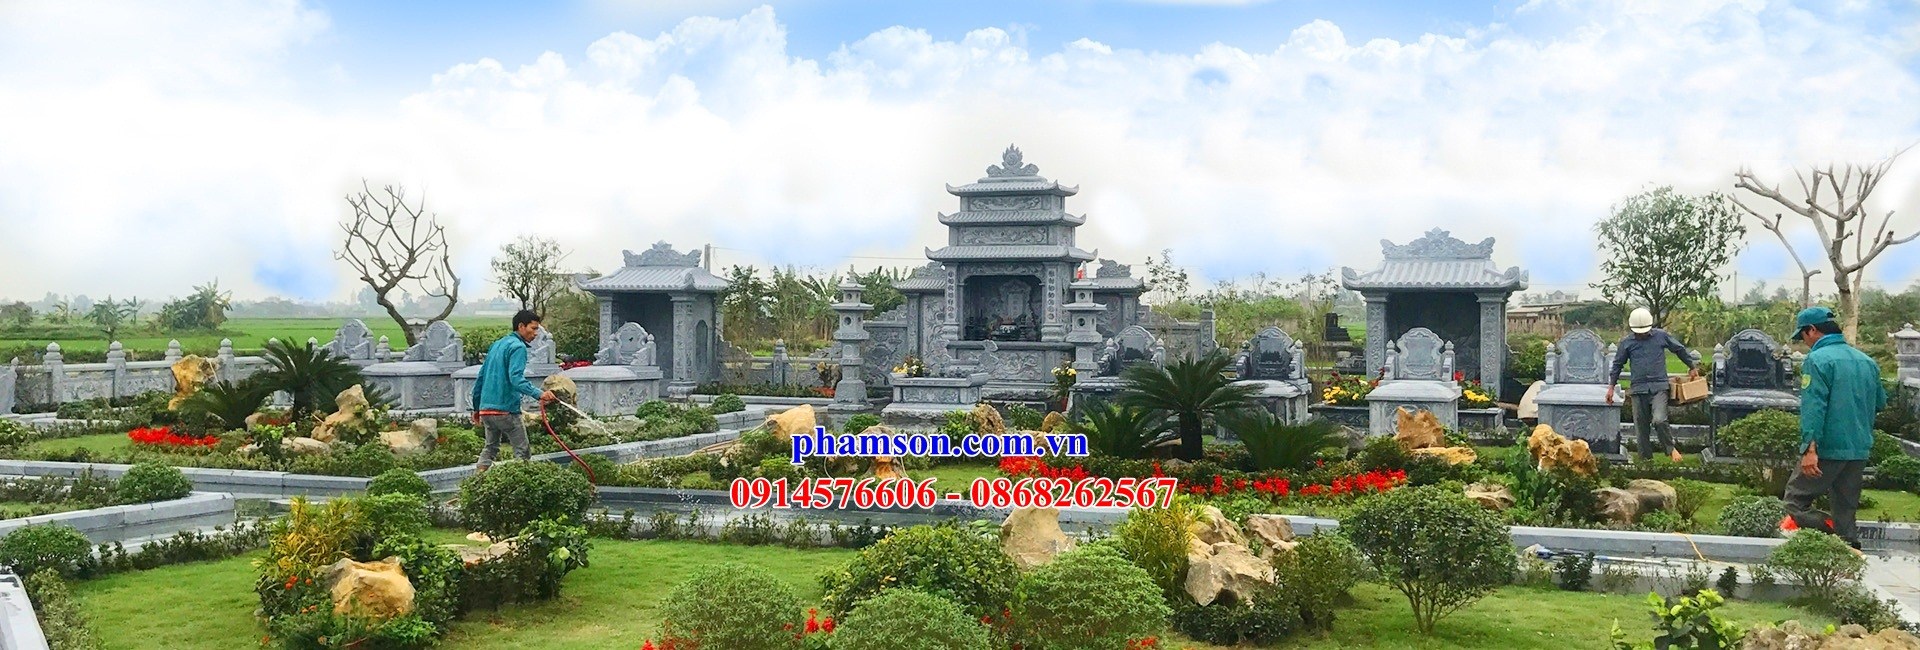 25 Nghĩa trang khu lăng mộ gia đình dòng họ gia tộc bằng đá đẹp bán tại Quảng Ninh